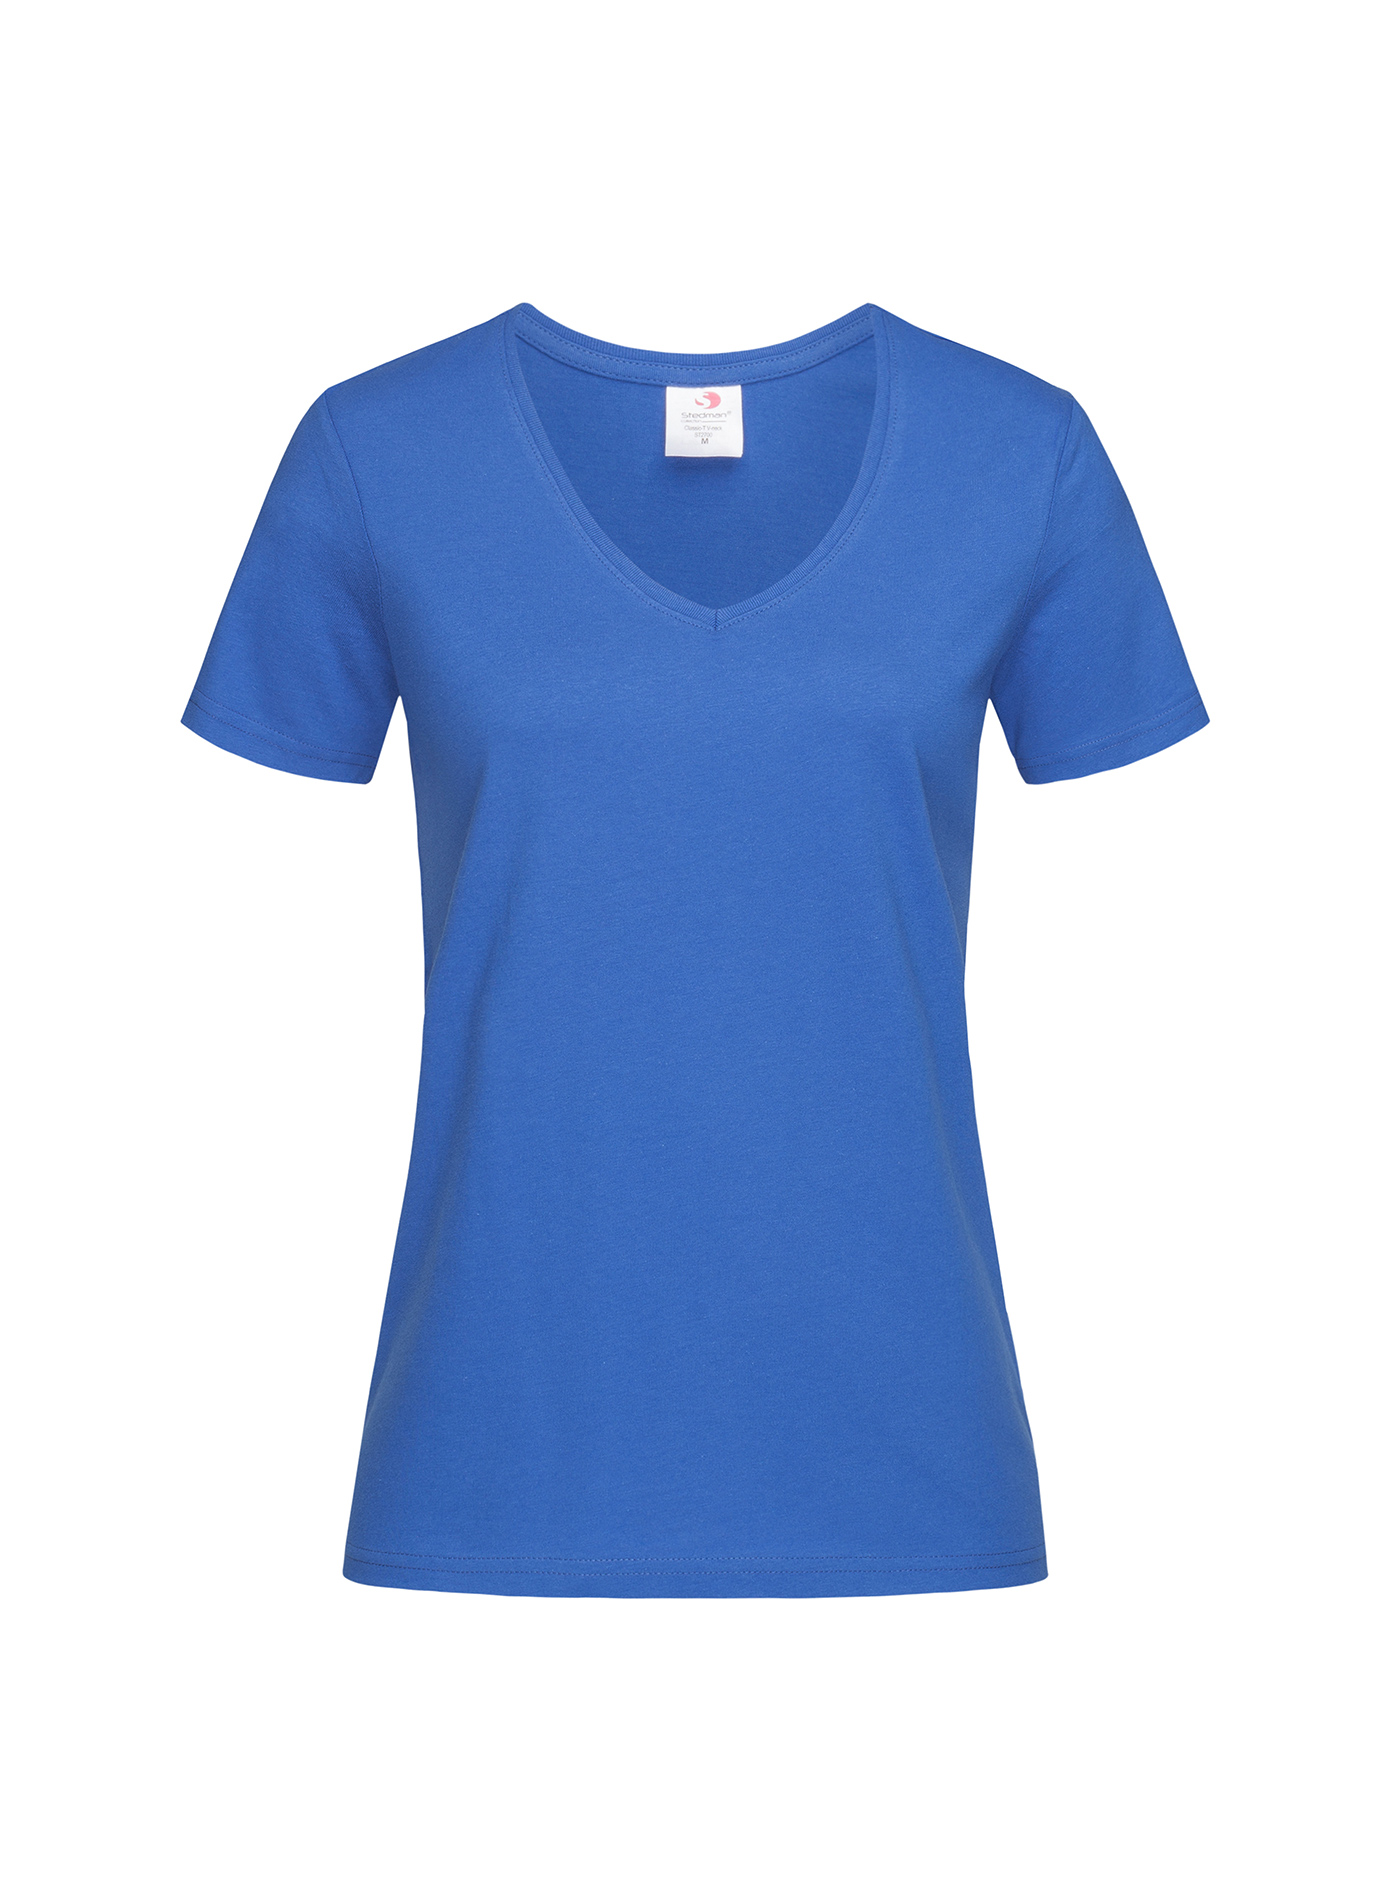 Dámské tričko s V-výstřihem Stedman - Královská modrá L